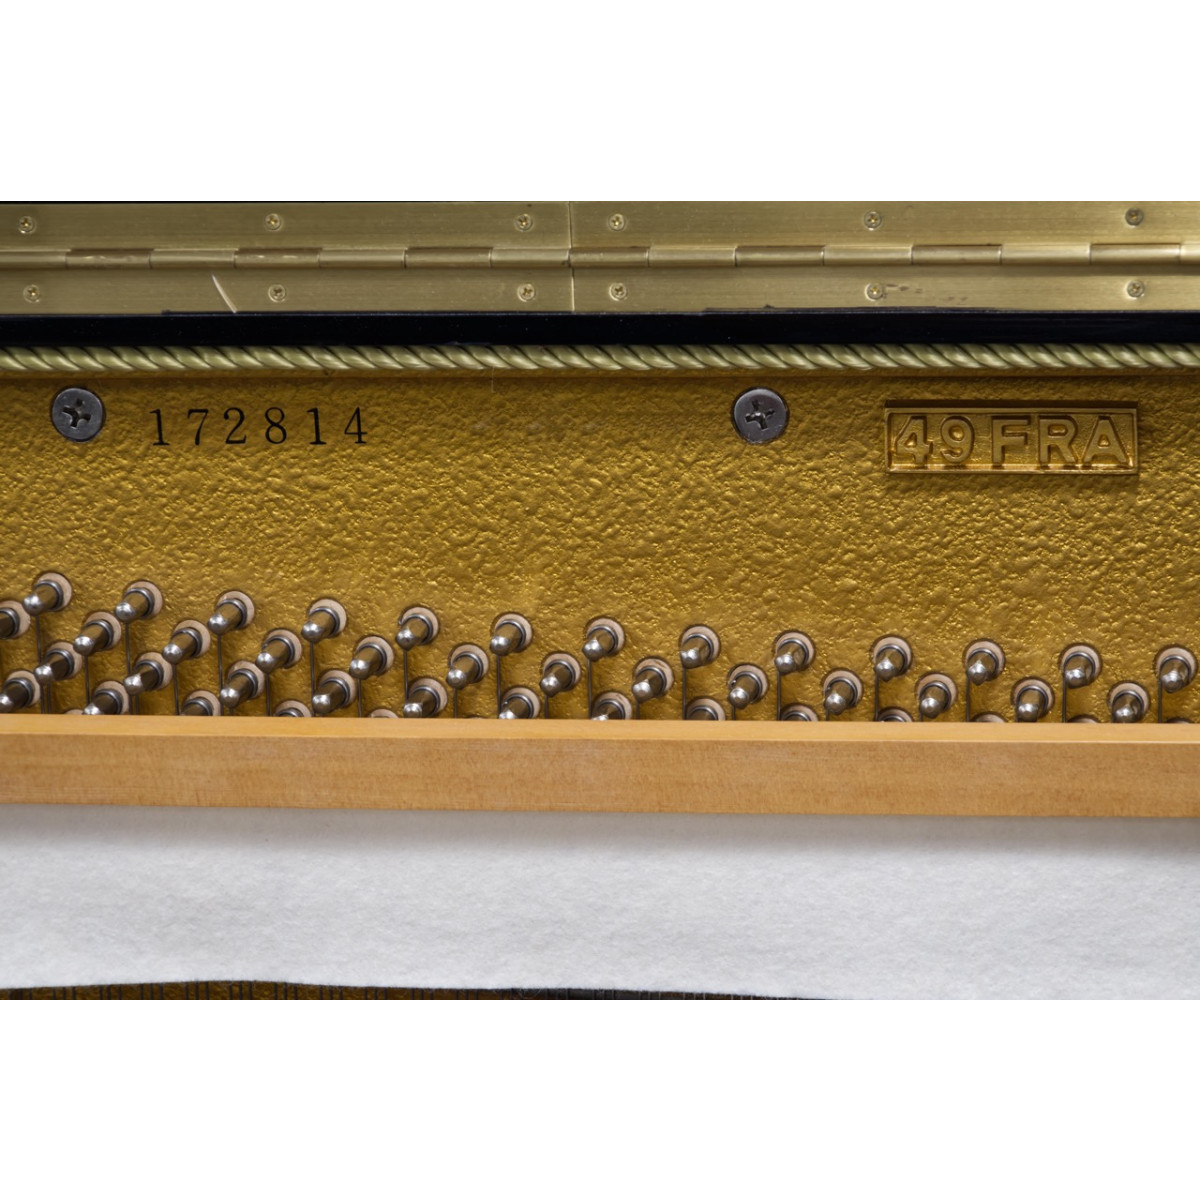 Royale Classic Klavier, Modell 49FRA, schwarz, gebraucht kaufen bei Pianelli, Ansicht: Seriennummer